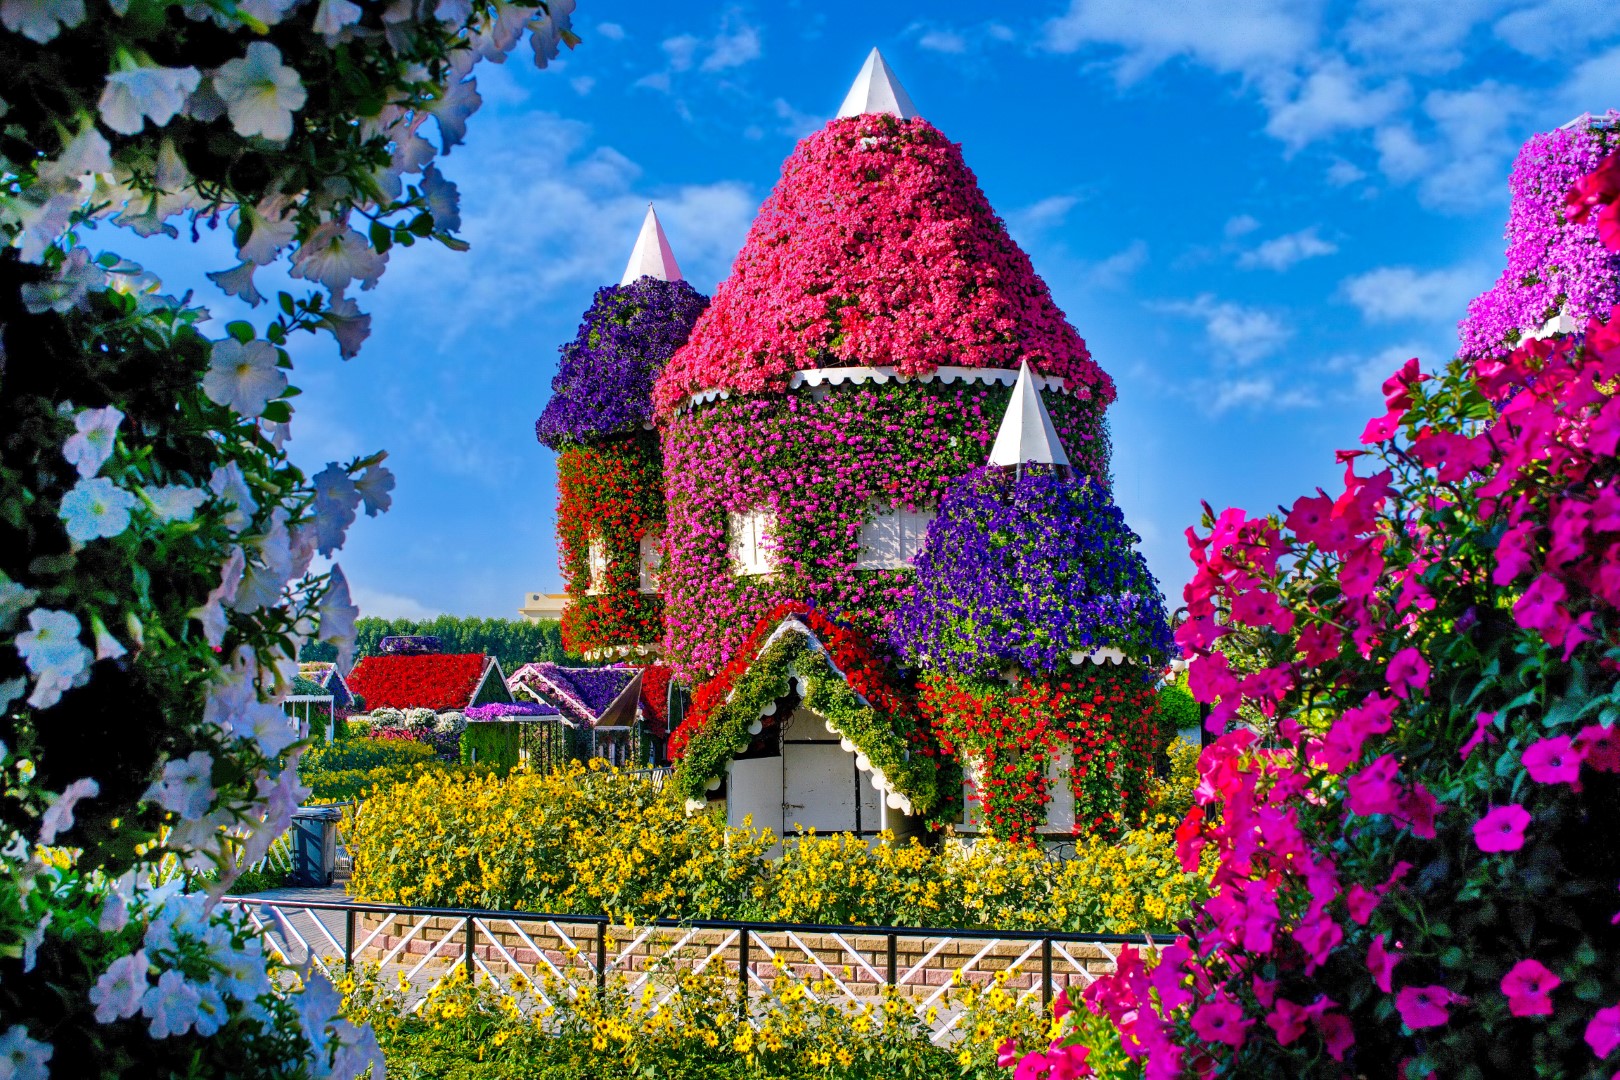 أكبر حديقة للزهور الطبيعية على مستوى العالم .. "دبي ميراكل جاردن" ترحب بزوارها ...